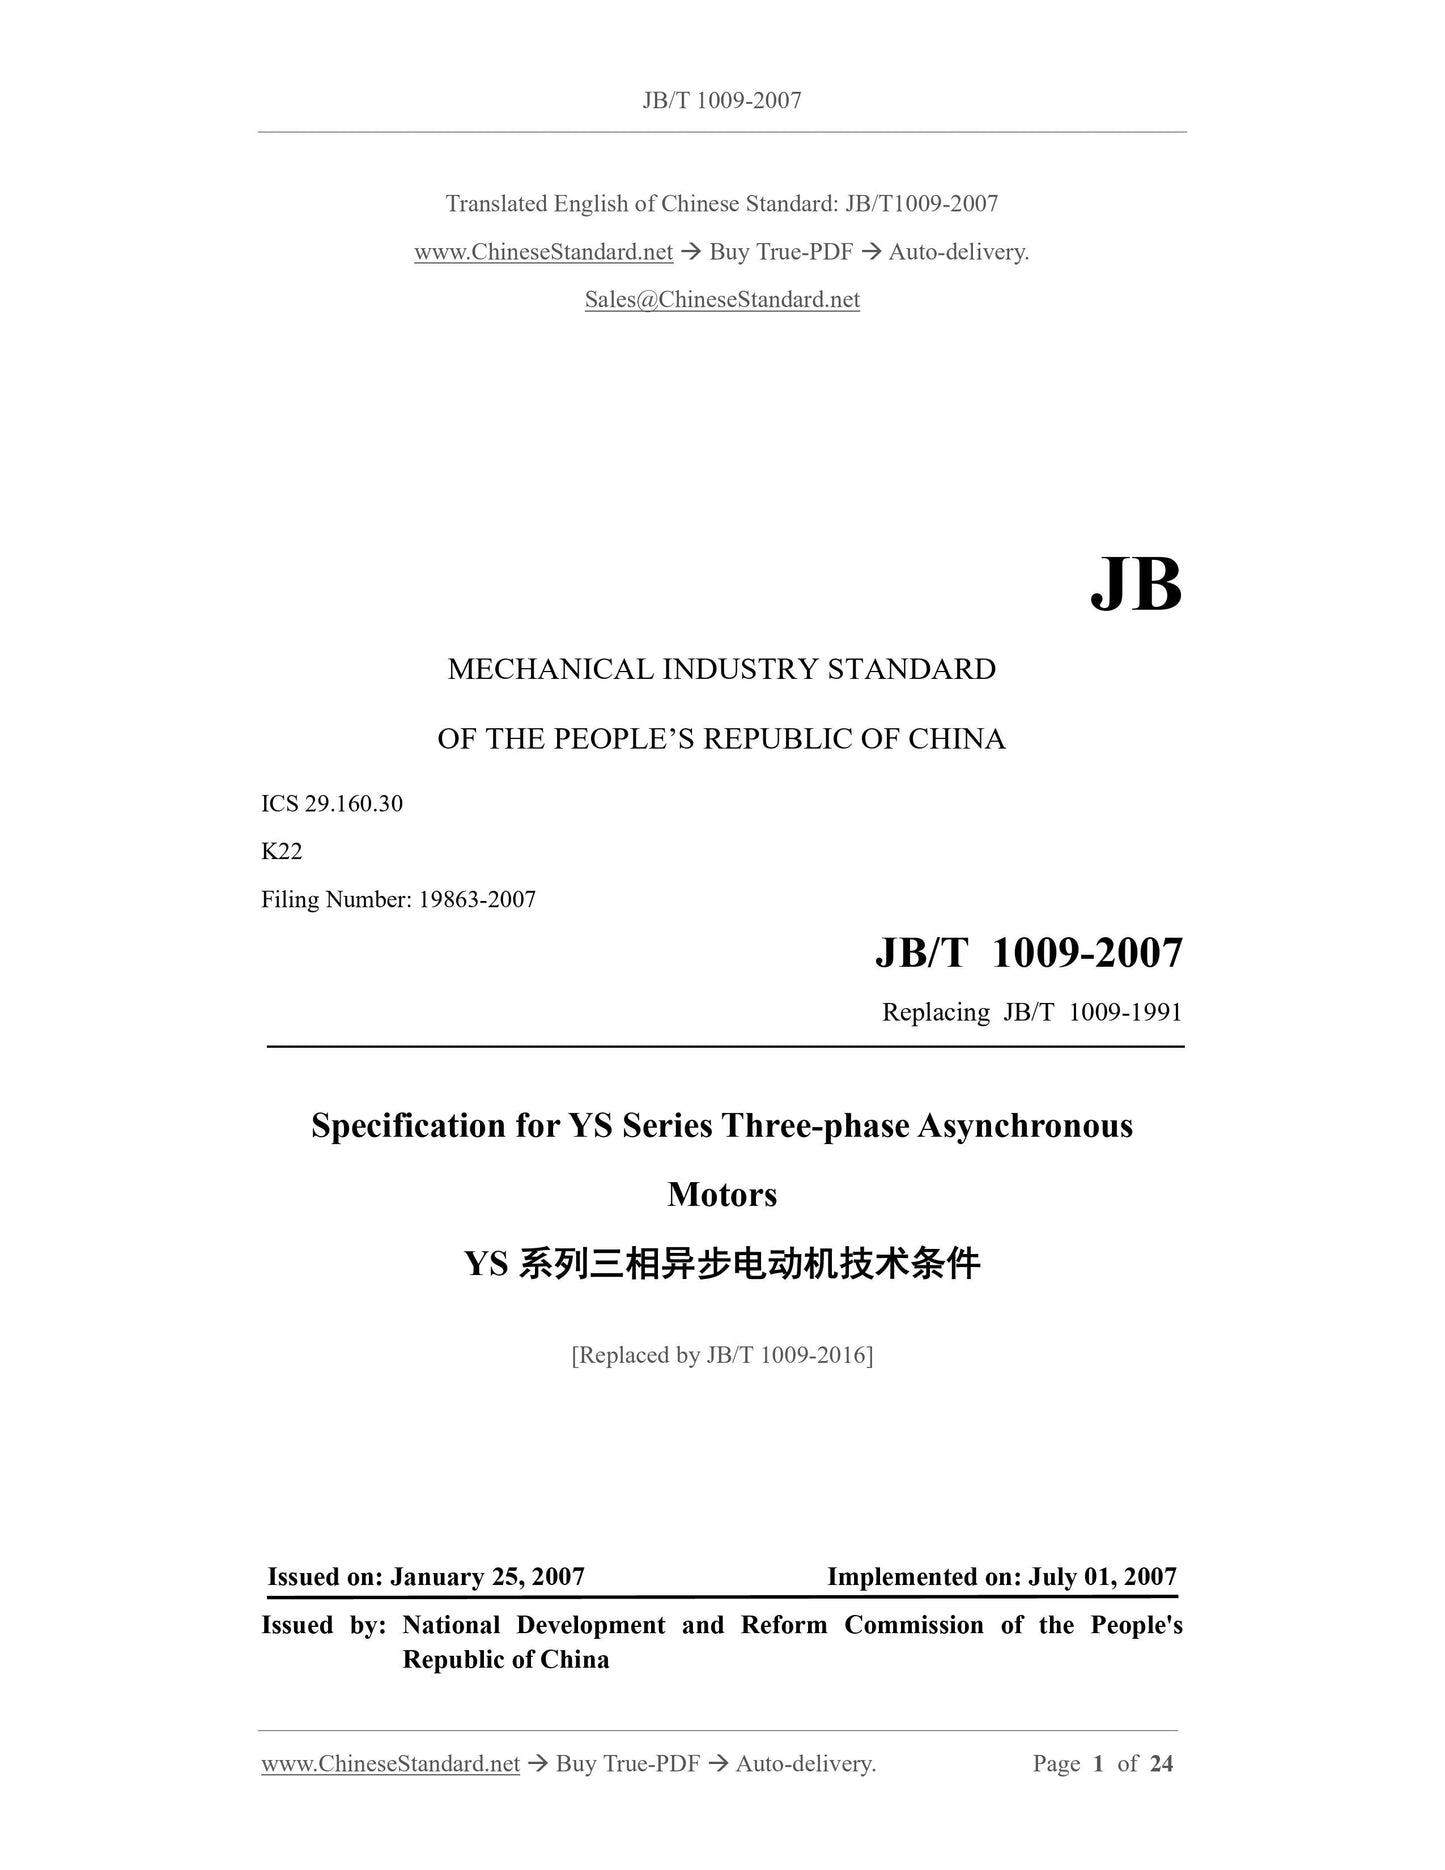 JB/T 1009-2007 Page 1